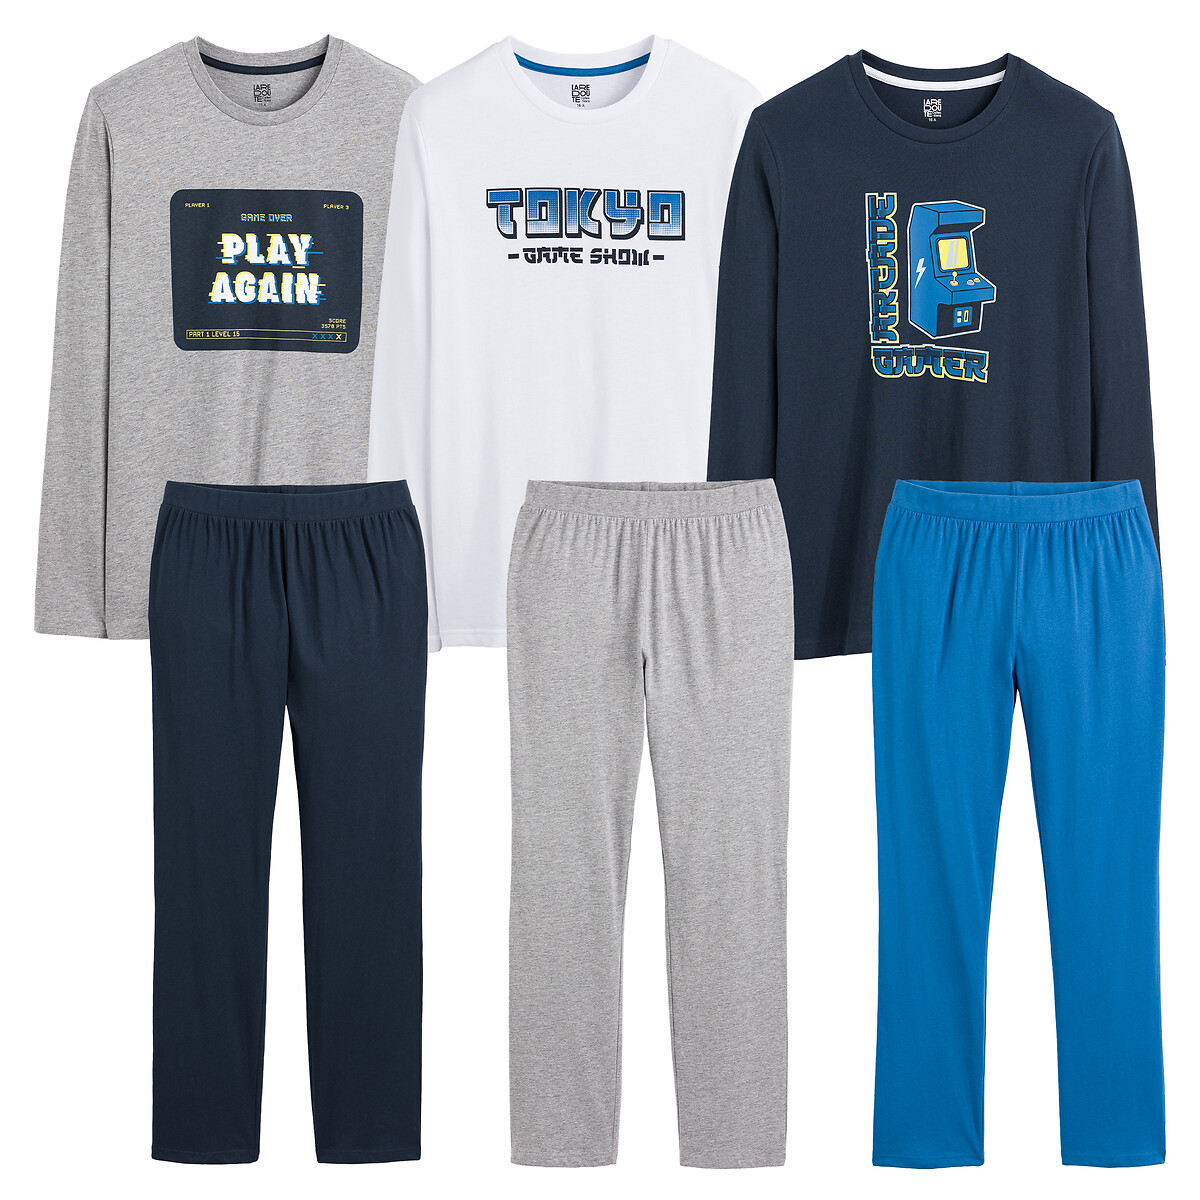 Комплект из трех пижам принт аркадные игры 14 лет - 162 см синий комплект из трех пижам с шортами 10 18 лет 16 лет 162 см белый